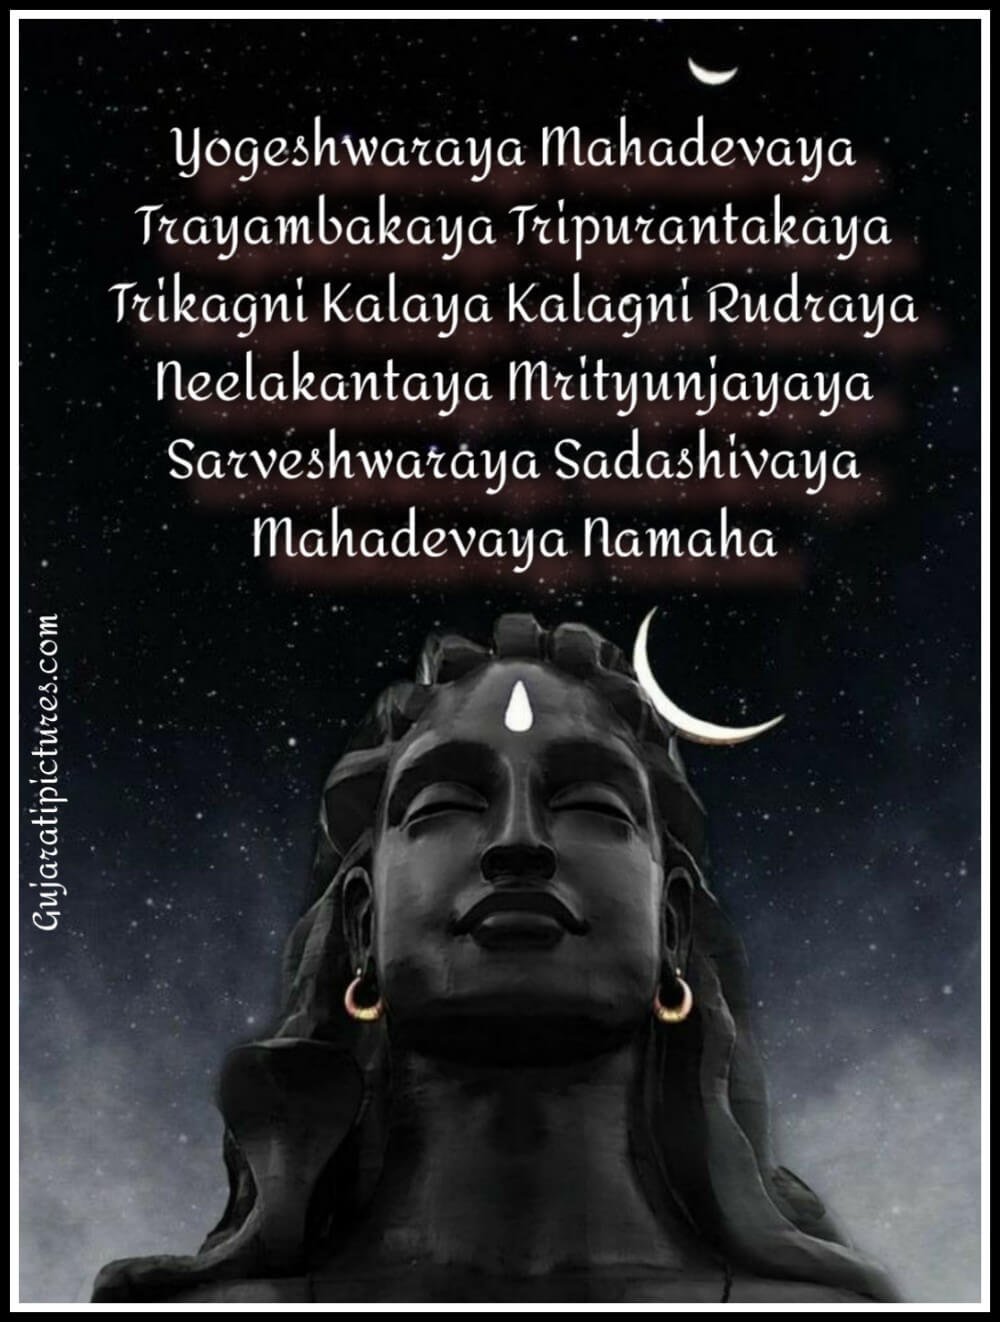 Mahadevaya Namah